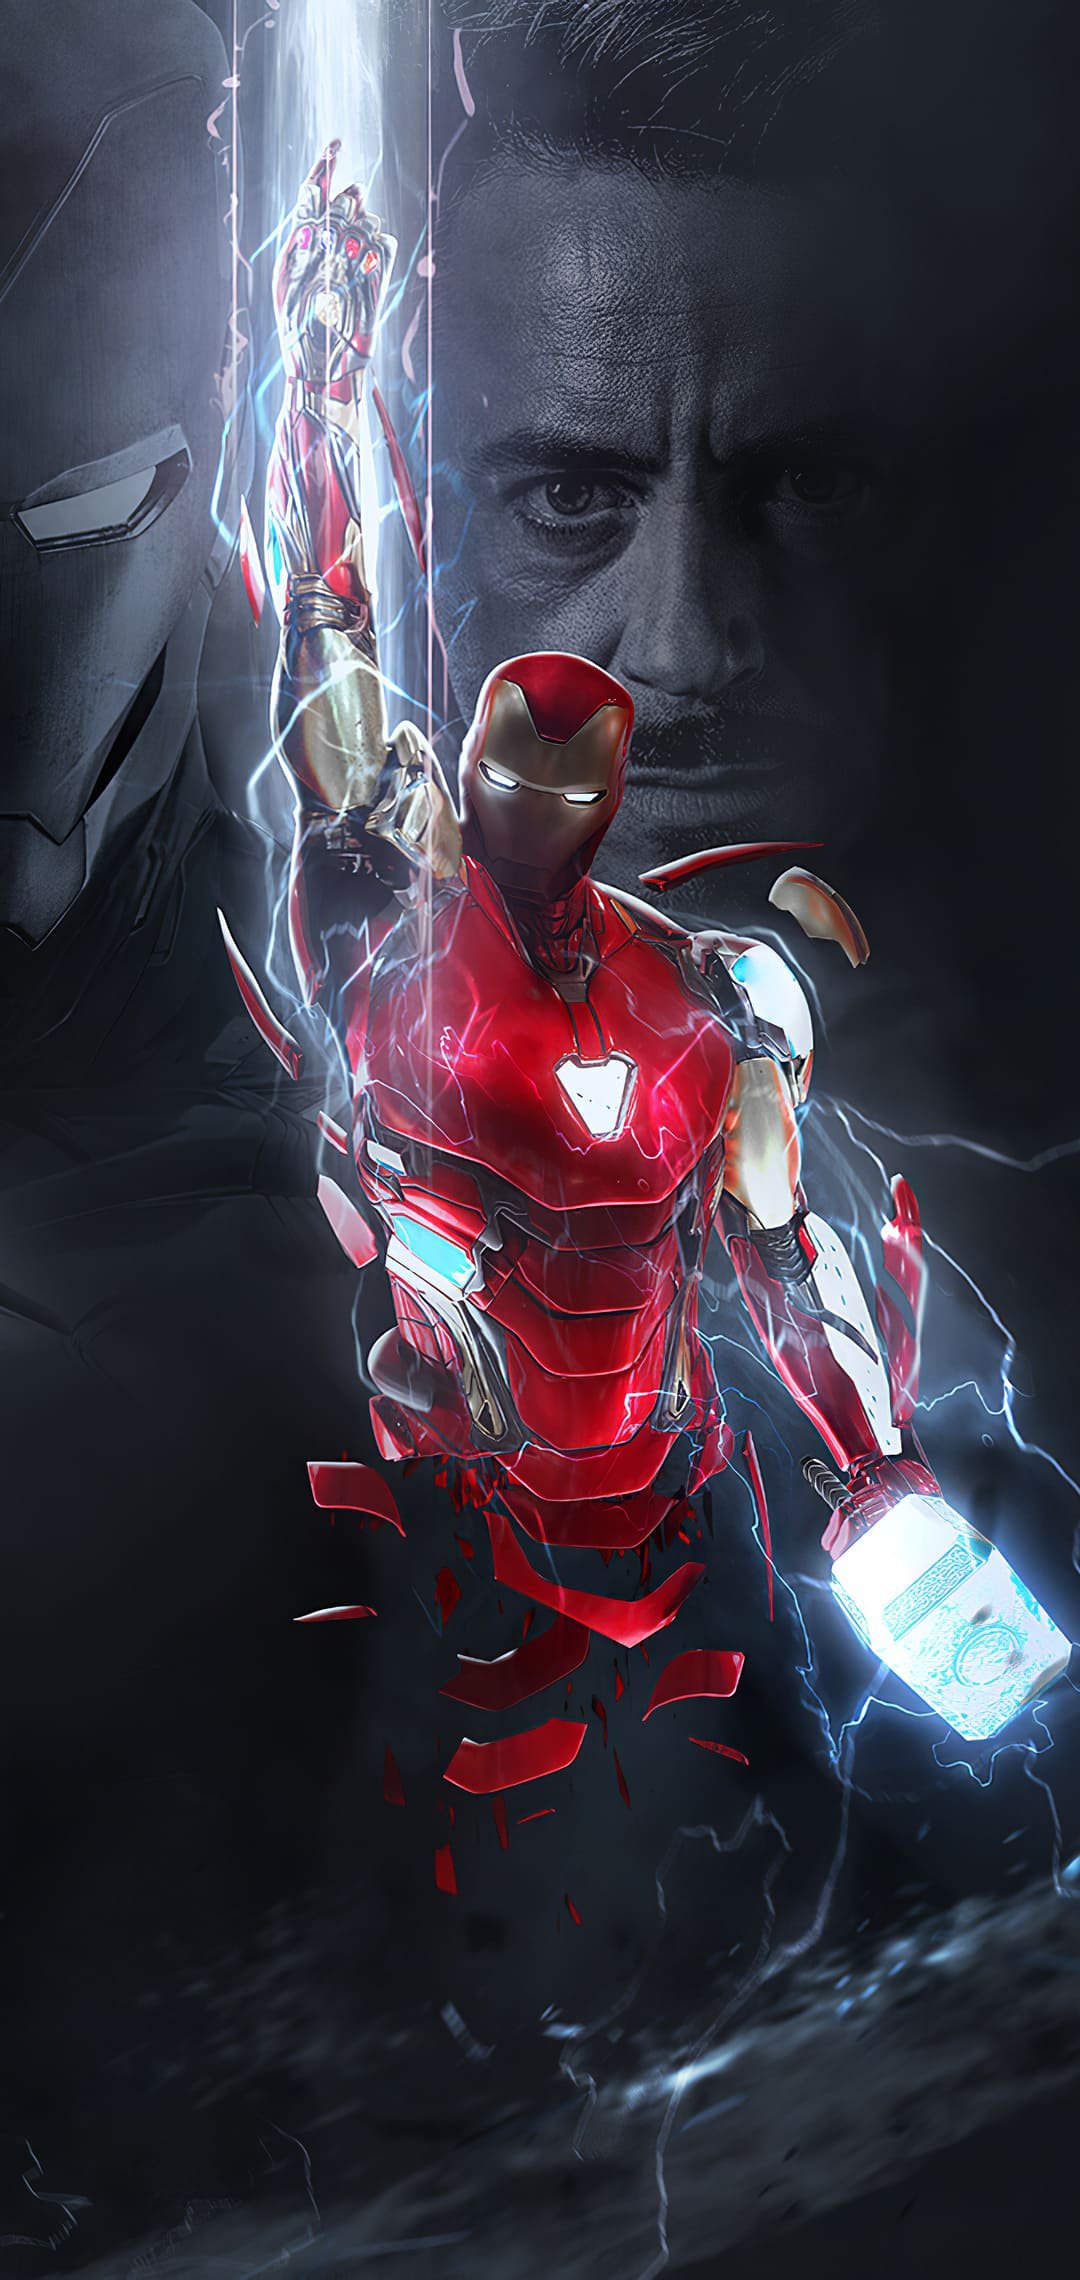 Tony Stark as Iron Man Wallpaper 4k Ultra HD ID9224